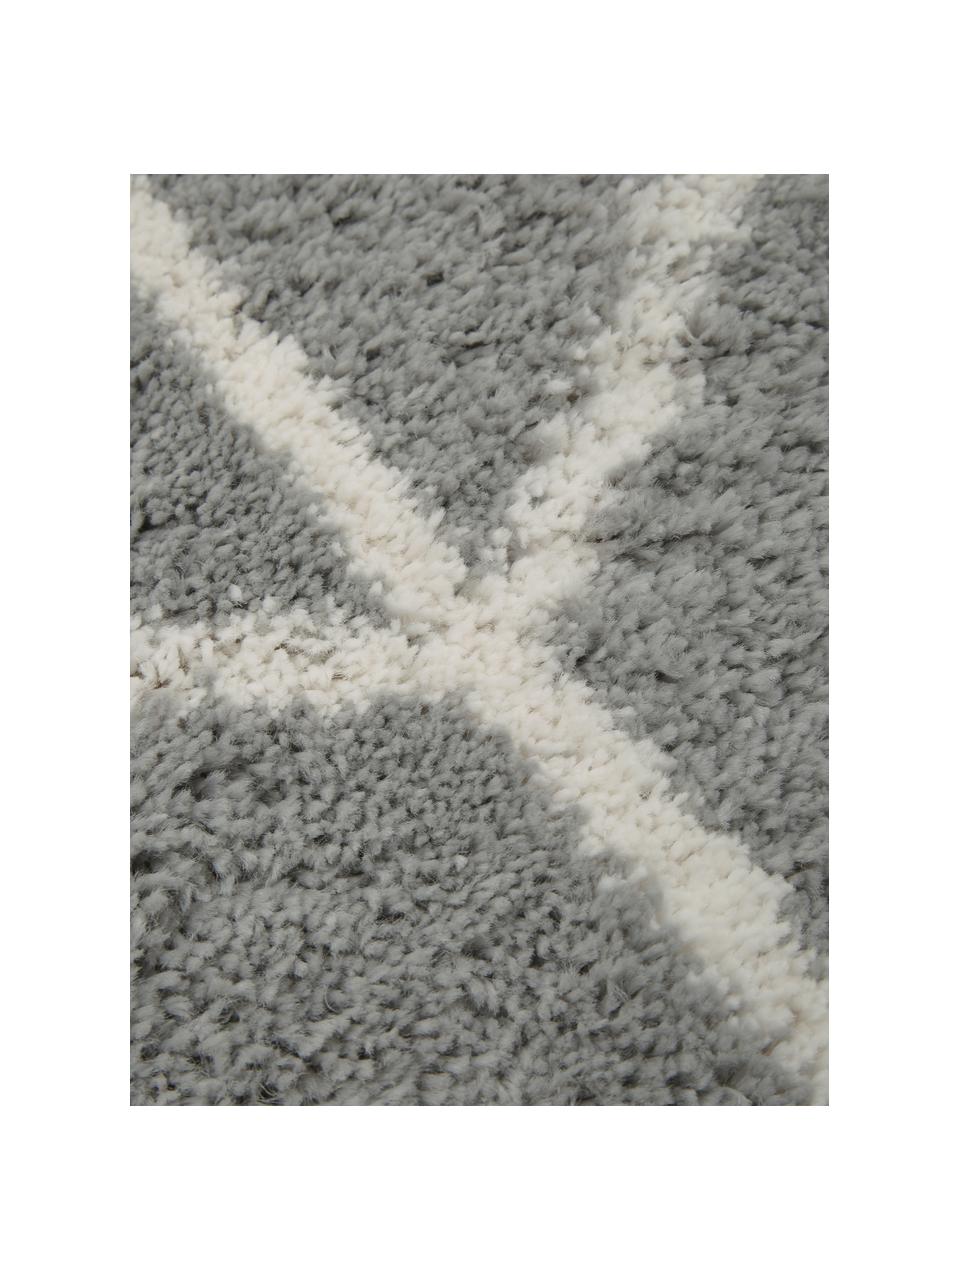 Runder Hochflor-Teppich Cera in Grau/Creme, Flor: 100% Polypropylen, Grau, Cremeweiss, Ø 150 cm (Grösse M)